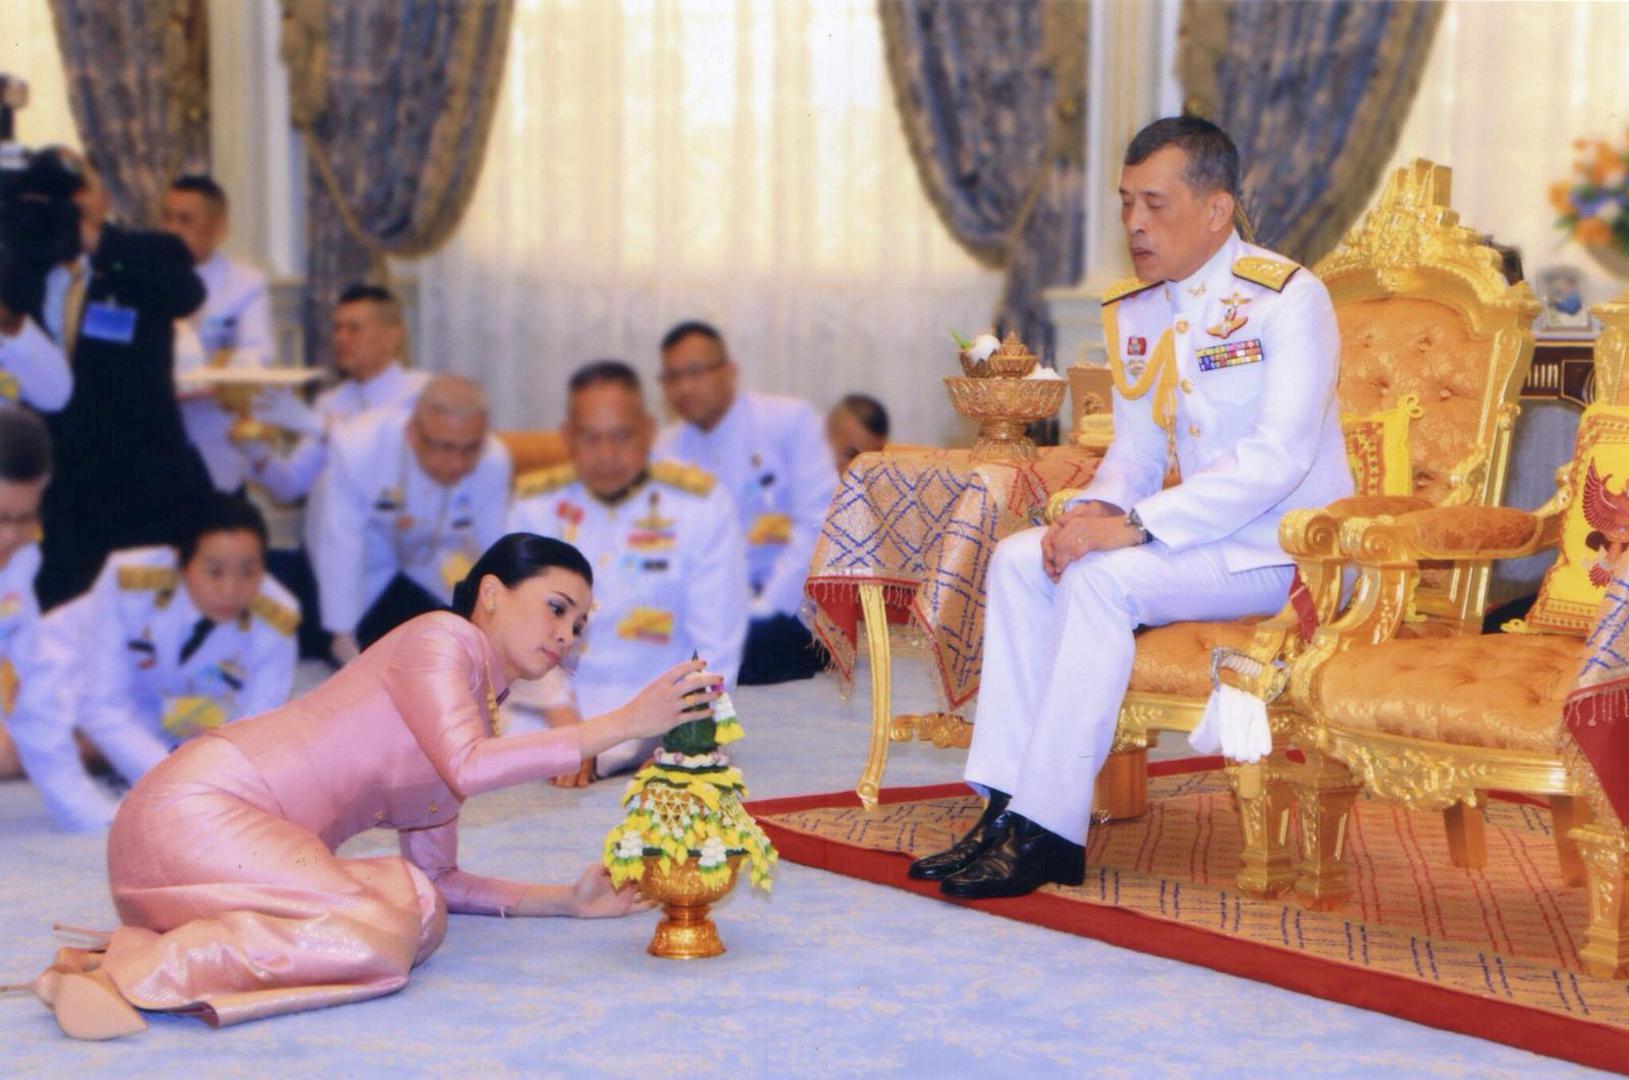 Snimka s vjenčanja je prikazan na tajlandskoj televiziji, a na vjenčanju je bila obitelj i brojni savjetnici.  